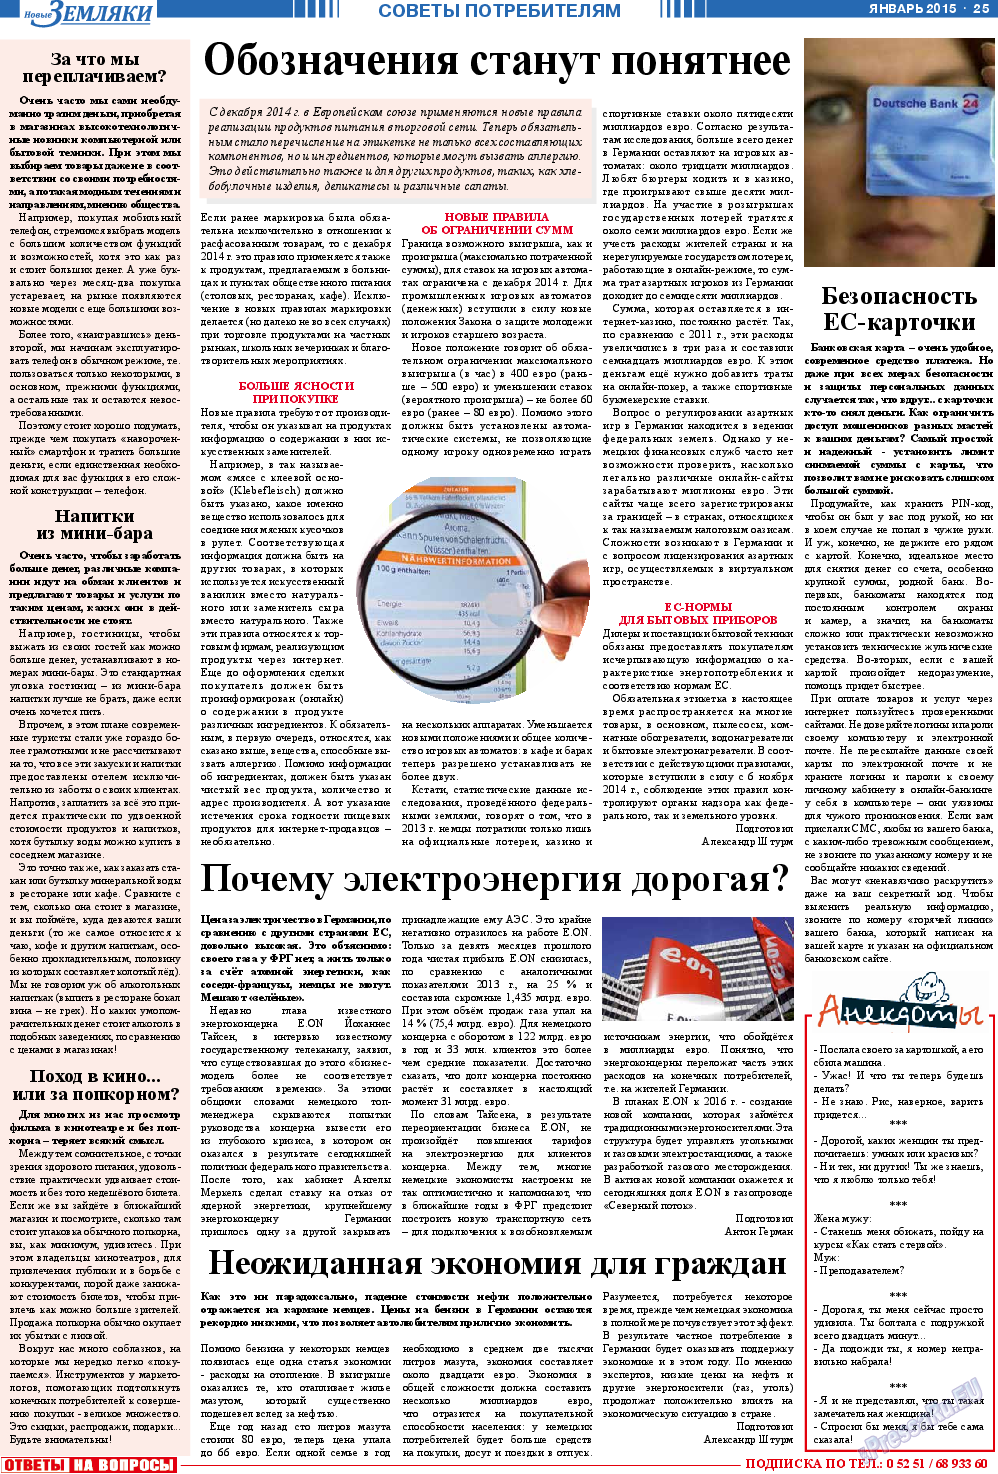 Новые Земляки, газета. 2015 №1 стр.25